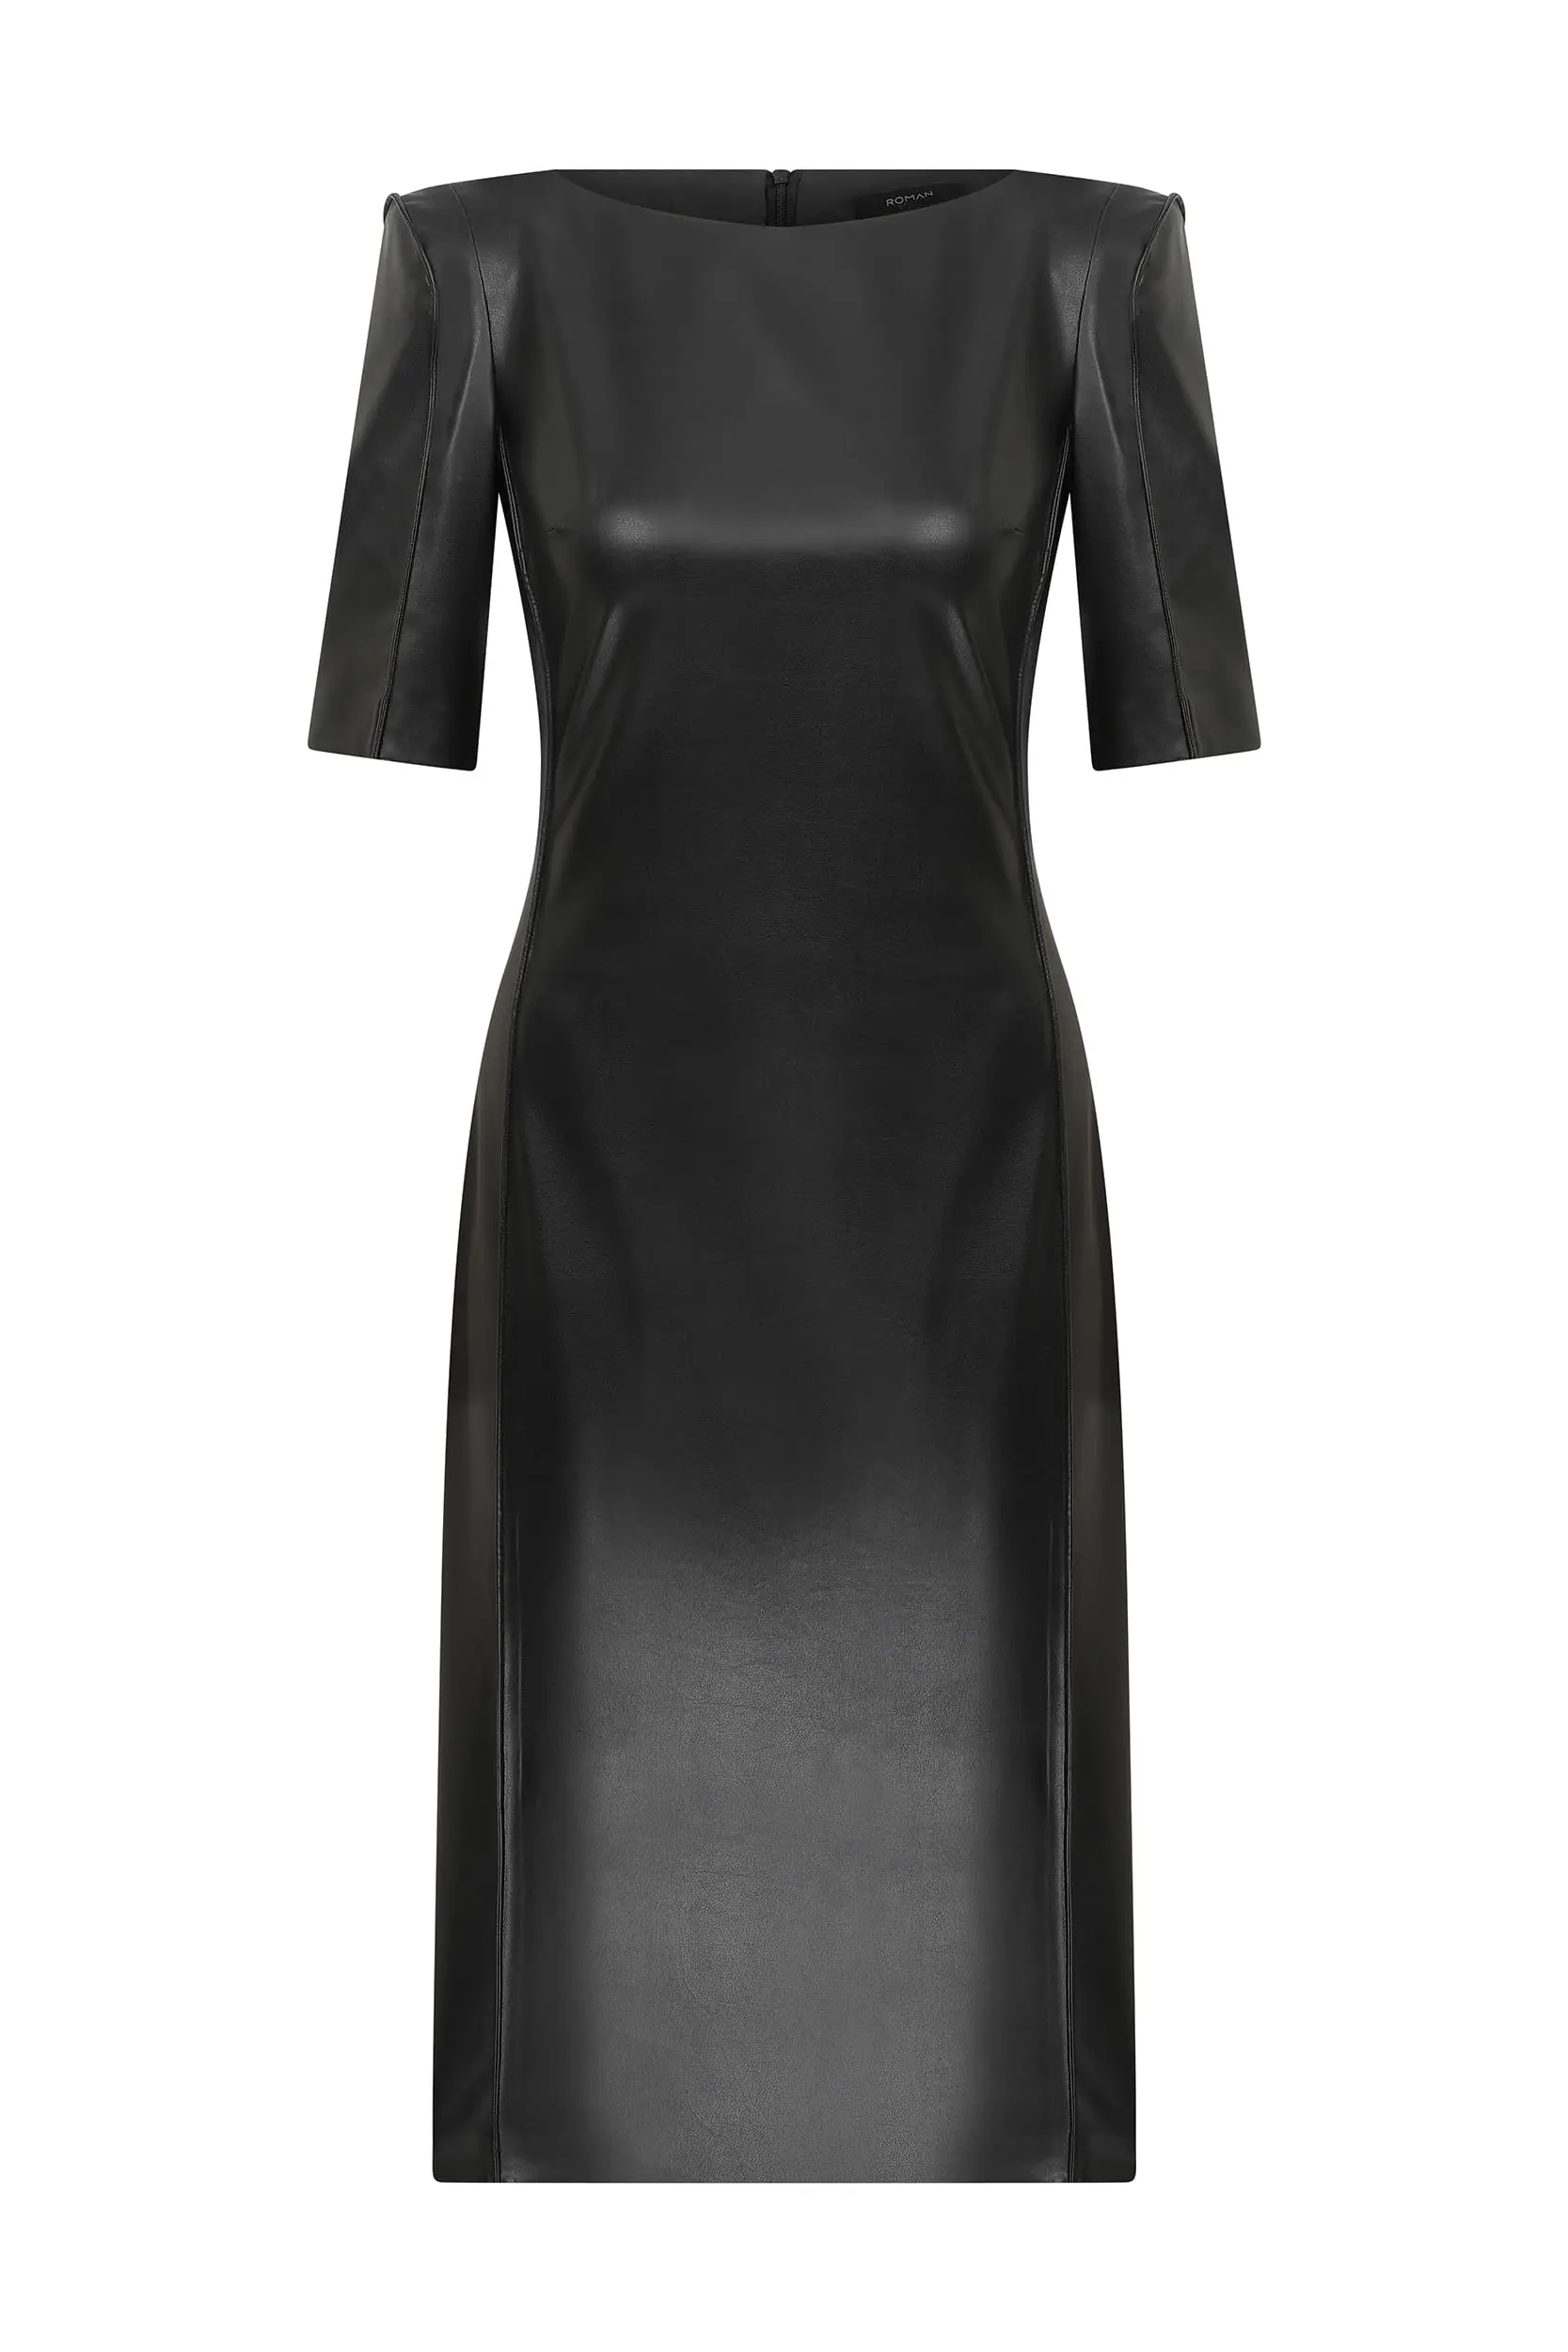 Roman Sassy Short Sleeve Black Sheath Dress - 2 / Black. 1